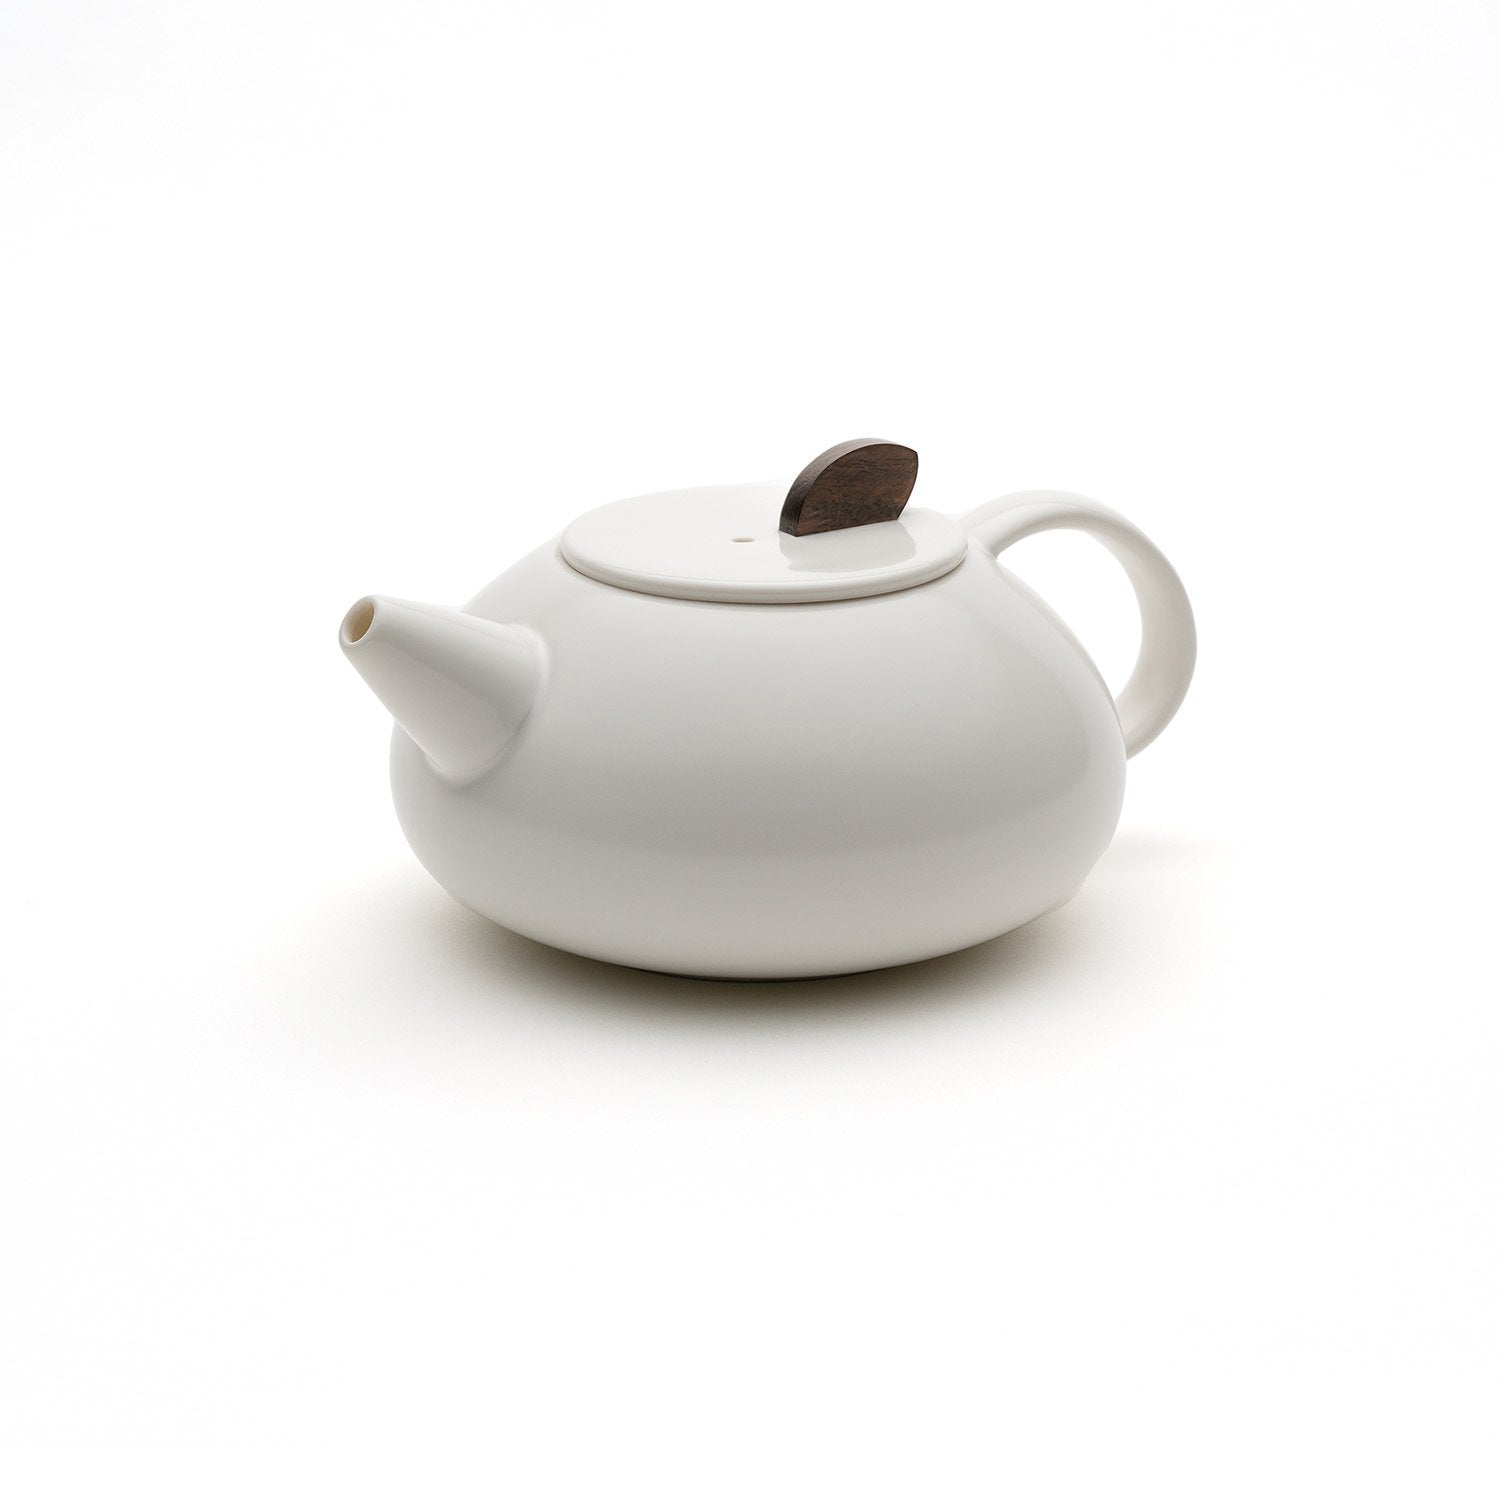 White small teapot